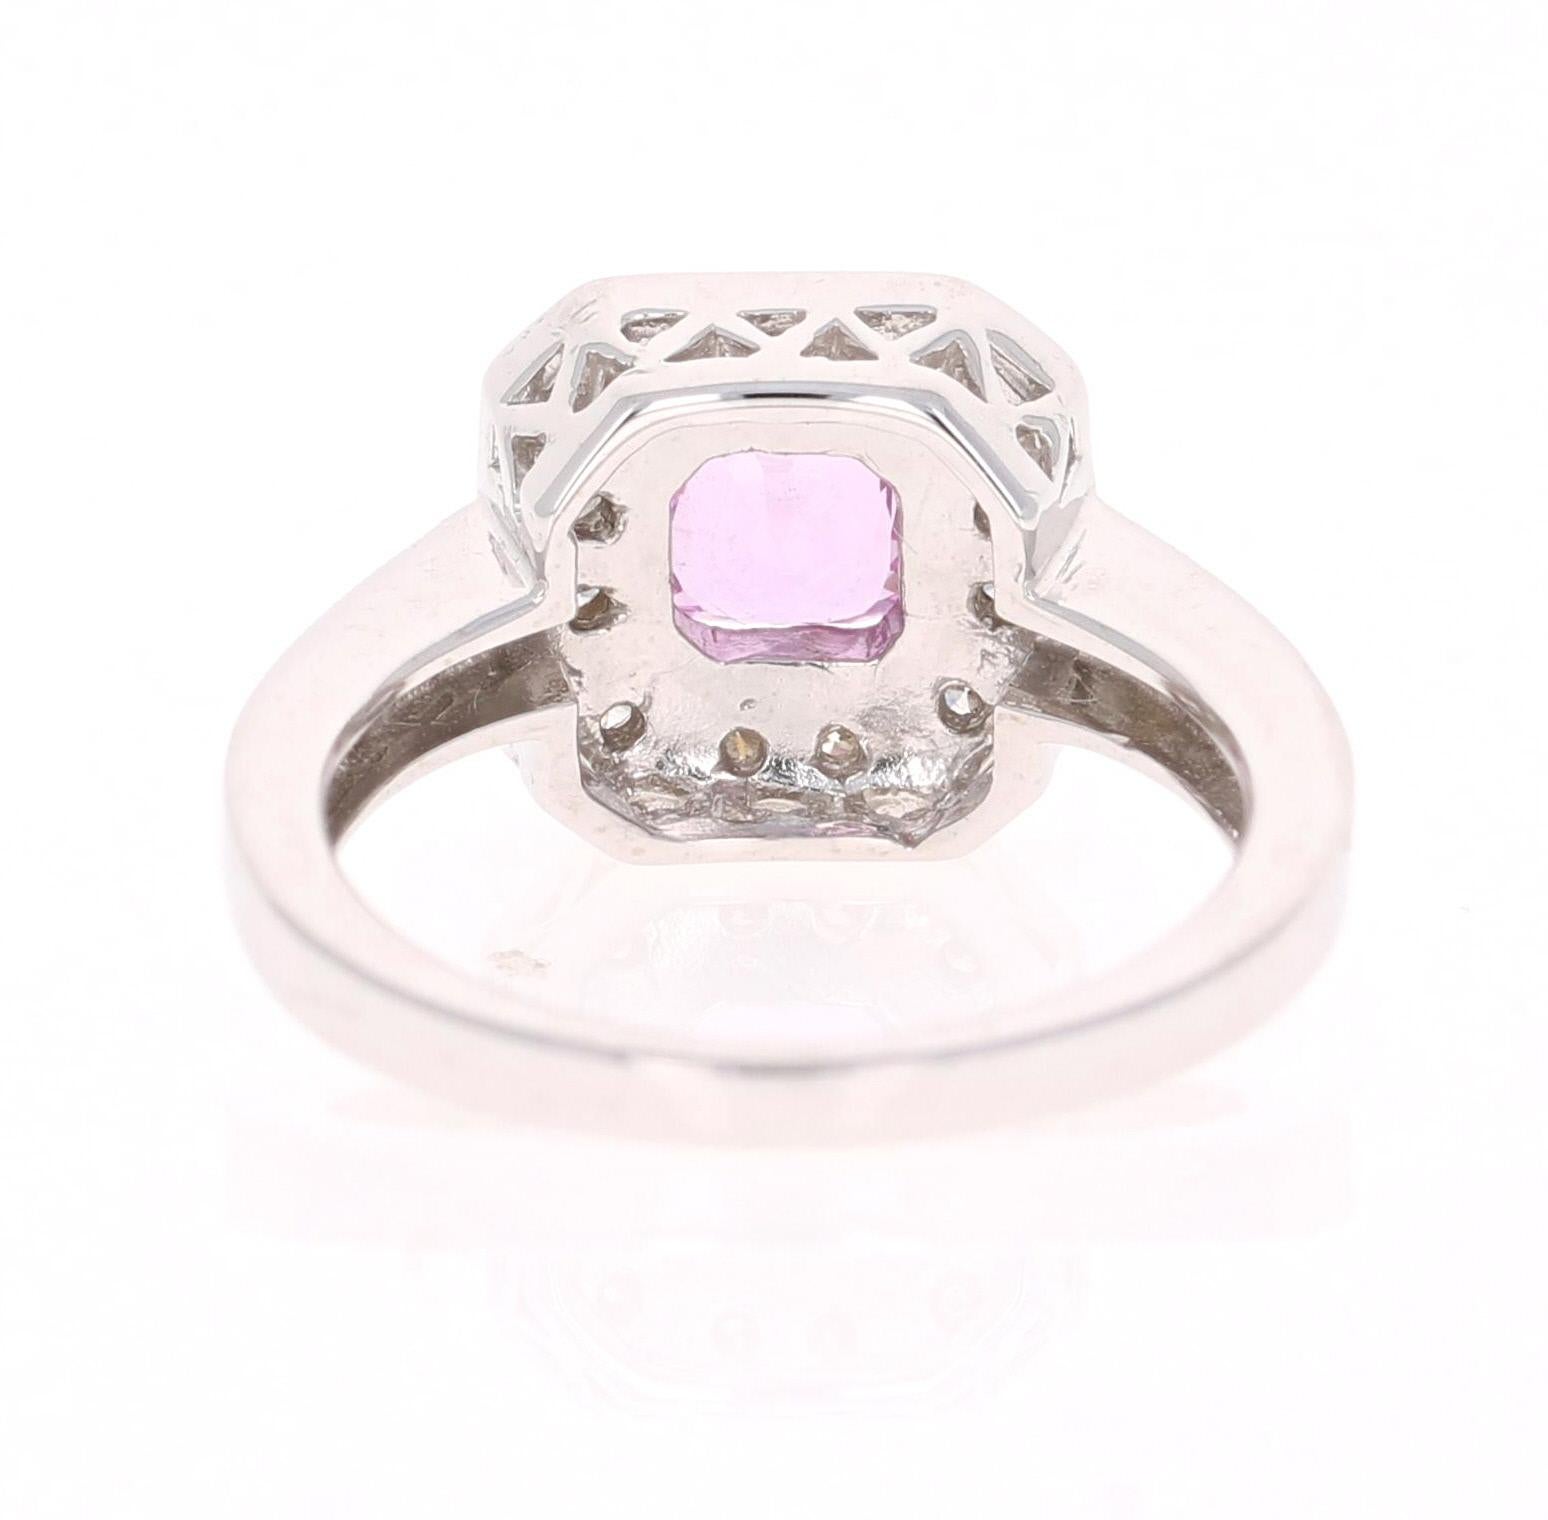 Cushion Cut 1.36 Carat Pink Sapphire Diamond 14 Karat White Gold Ring